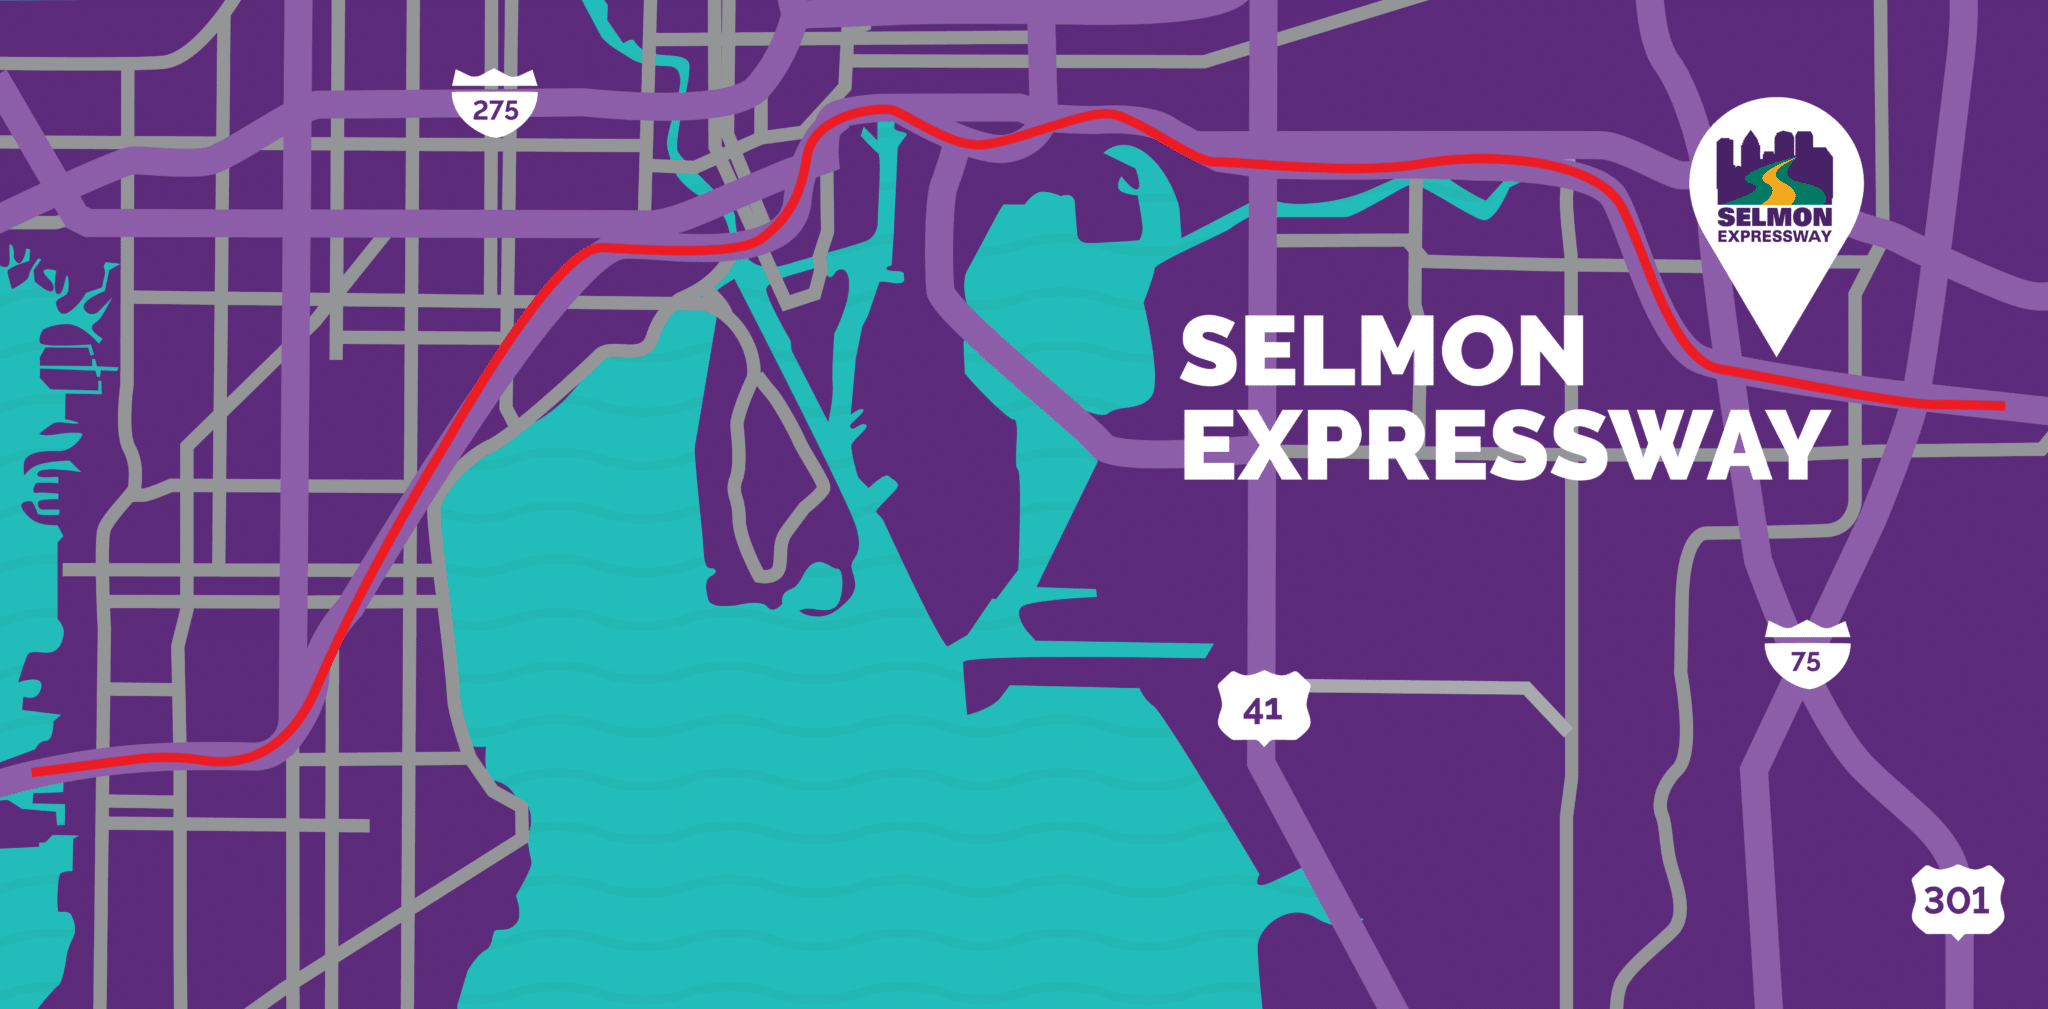 Selmon Expressway - Tampa Hillsborough Expressway Authority